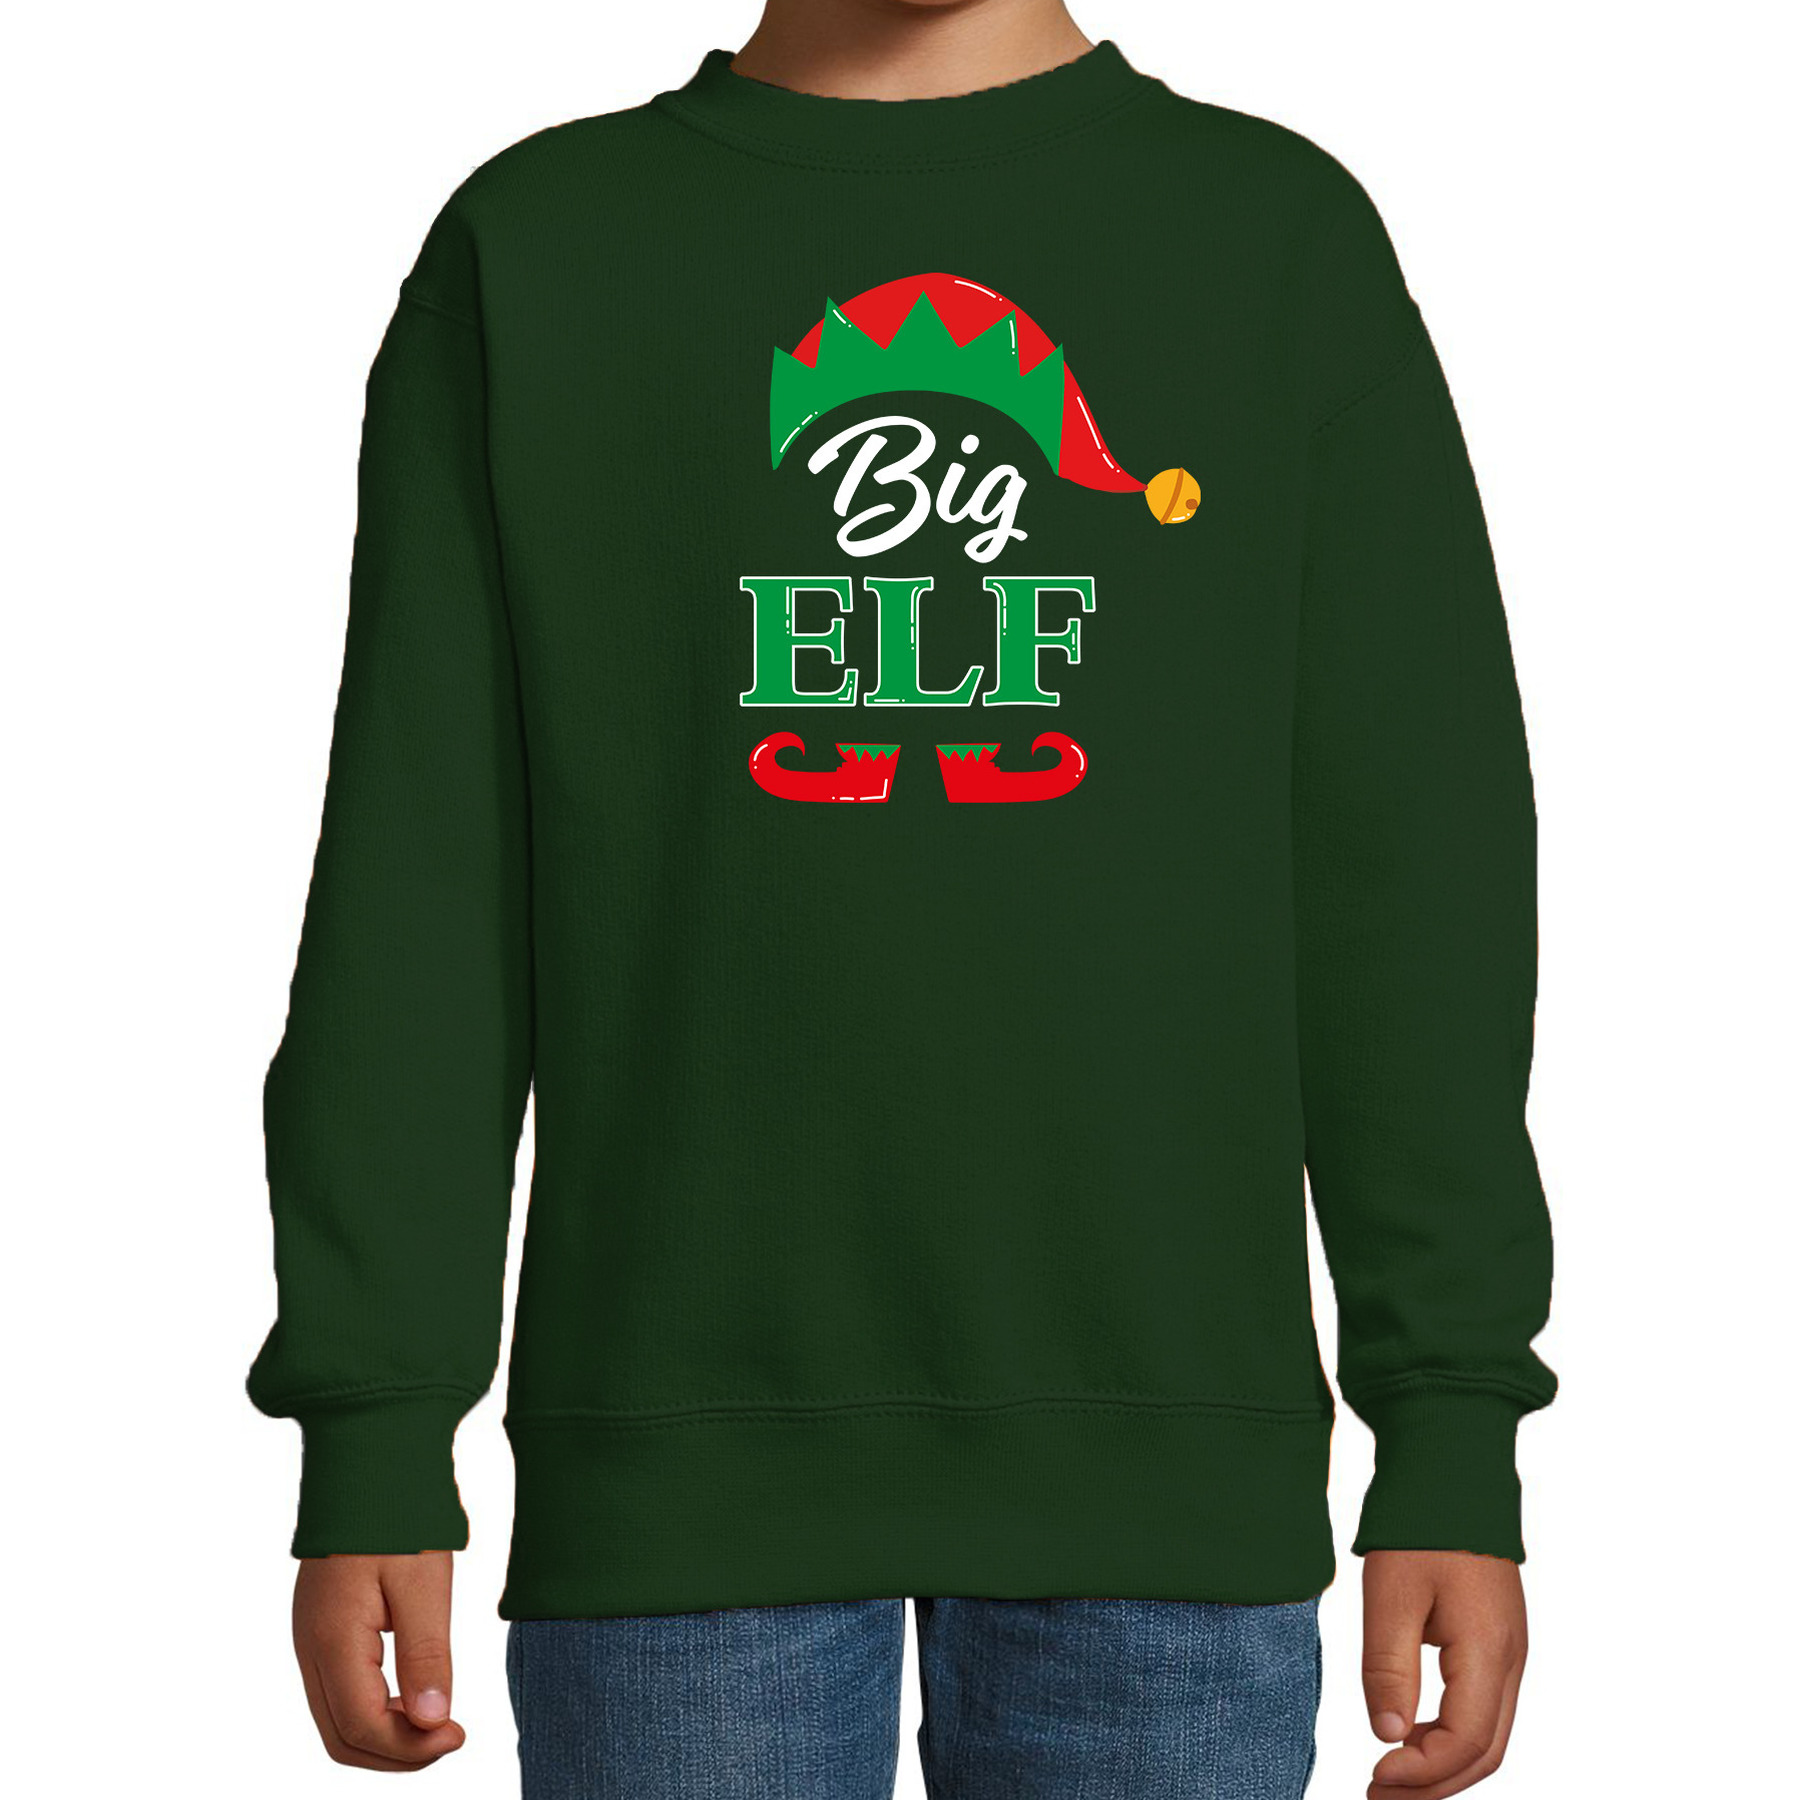 Big elf Kerstsweater - Kersttrui groen voor kinderen